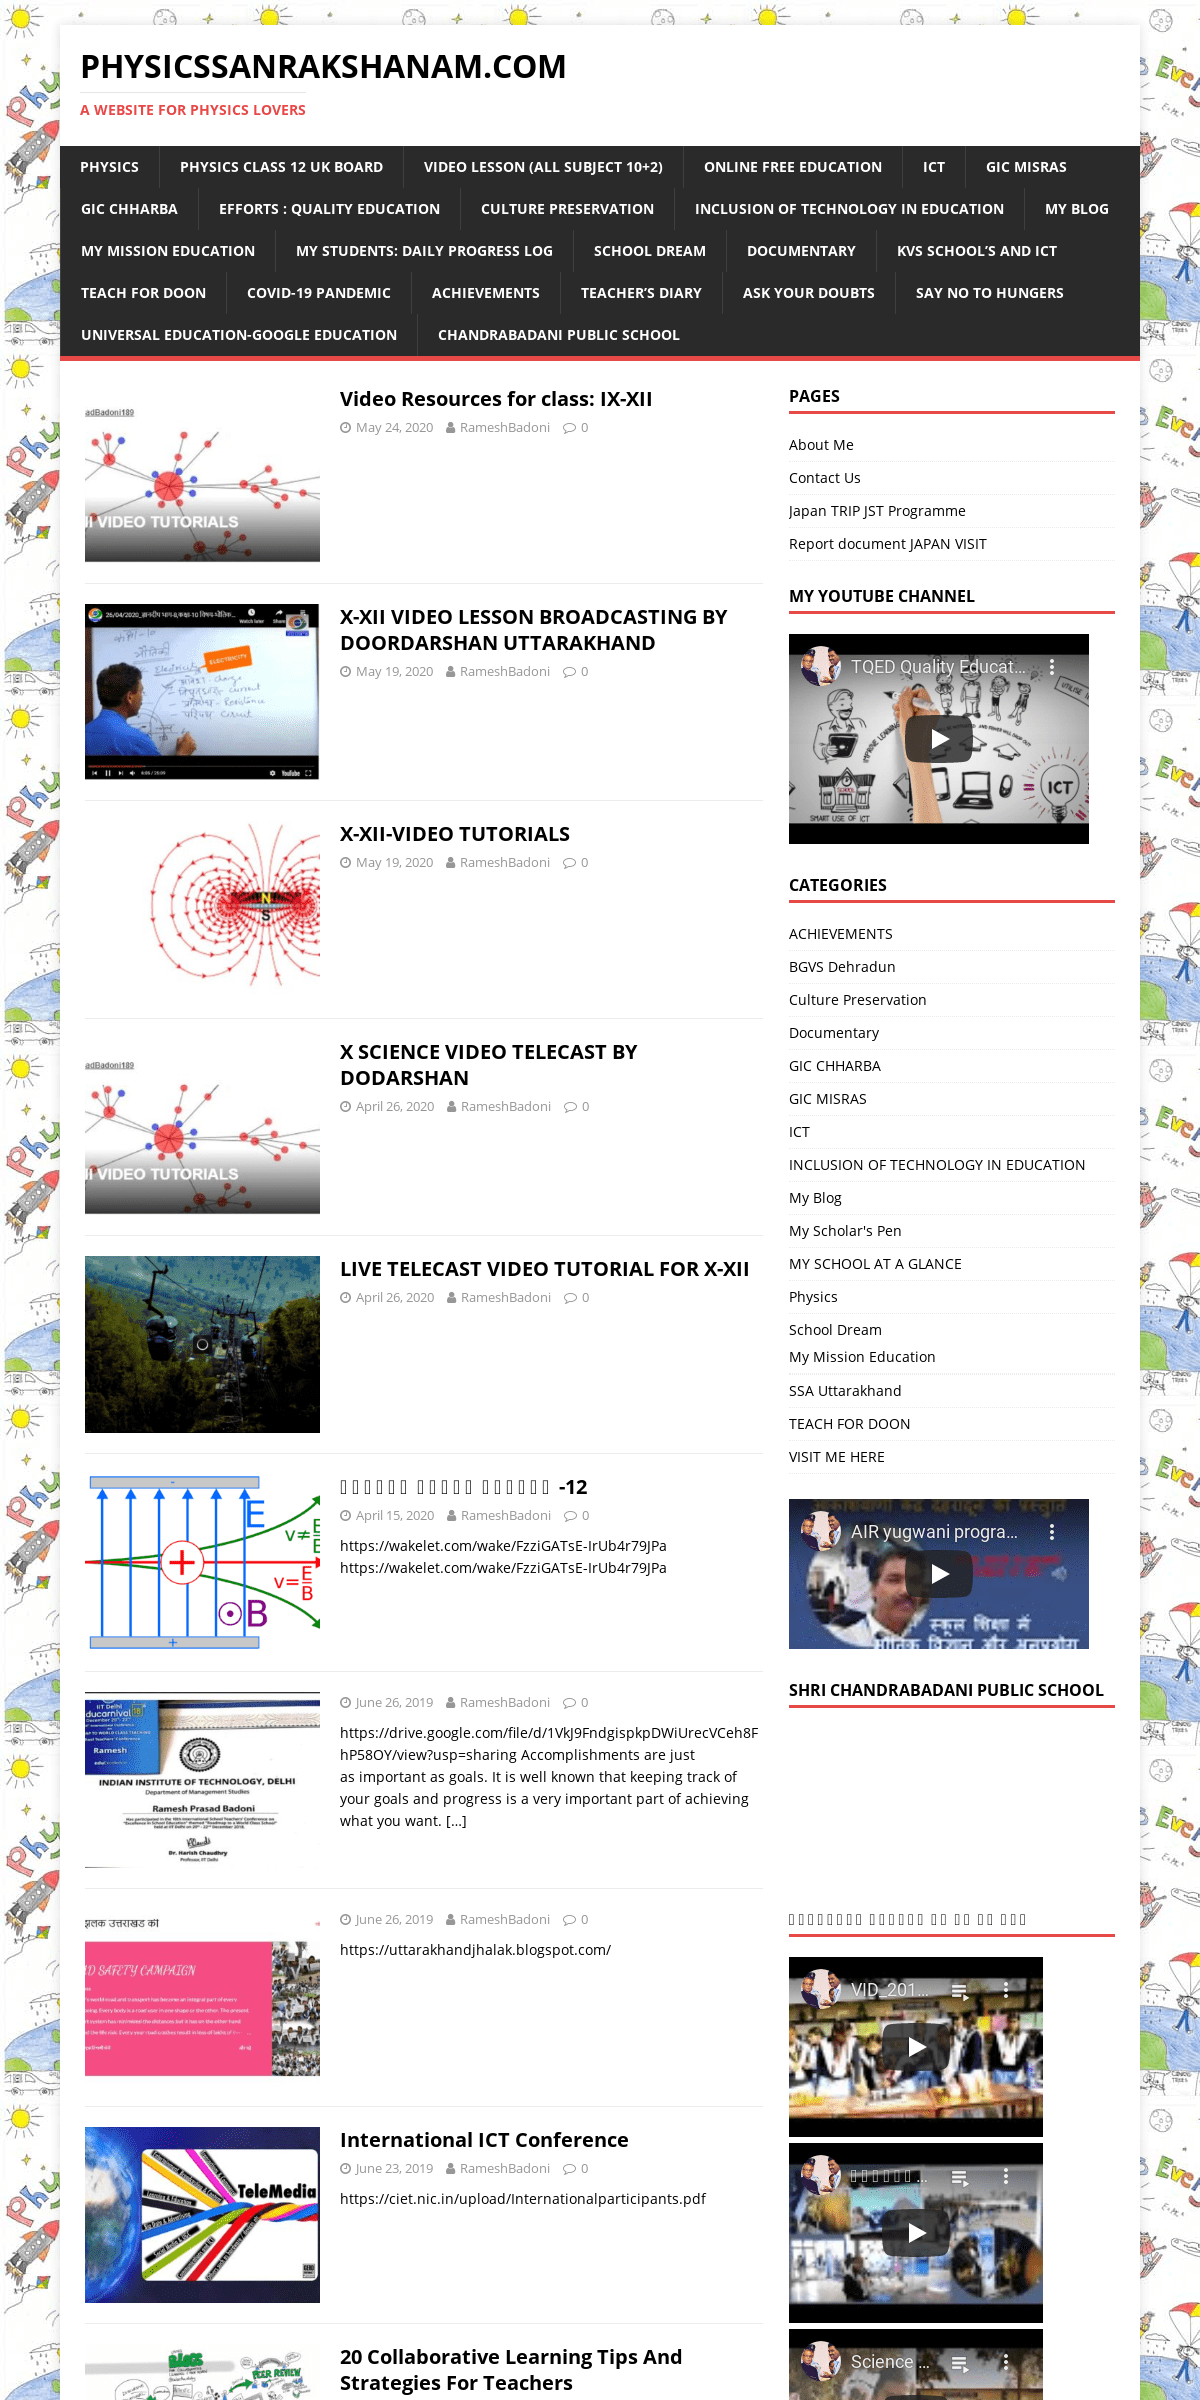 A complete backup of physicssanrakshanam.com